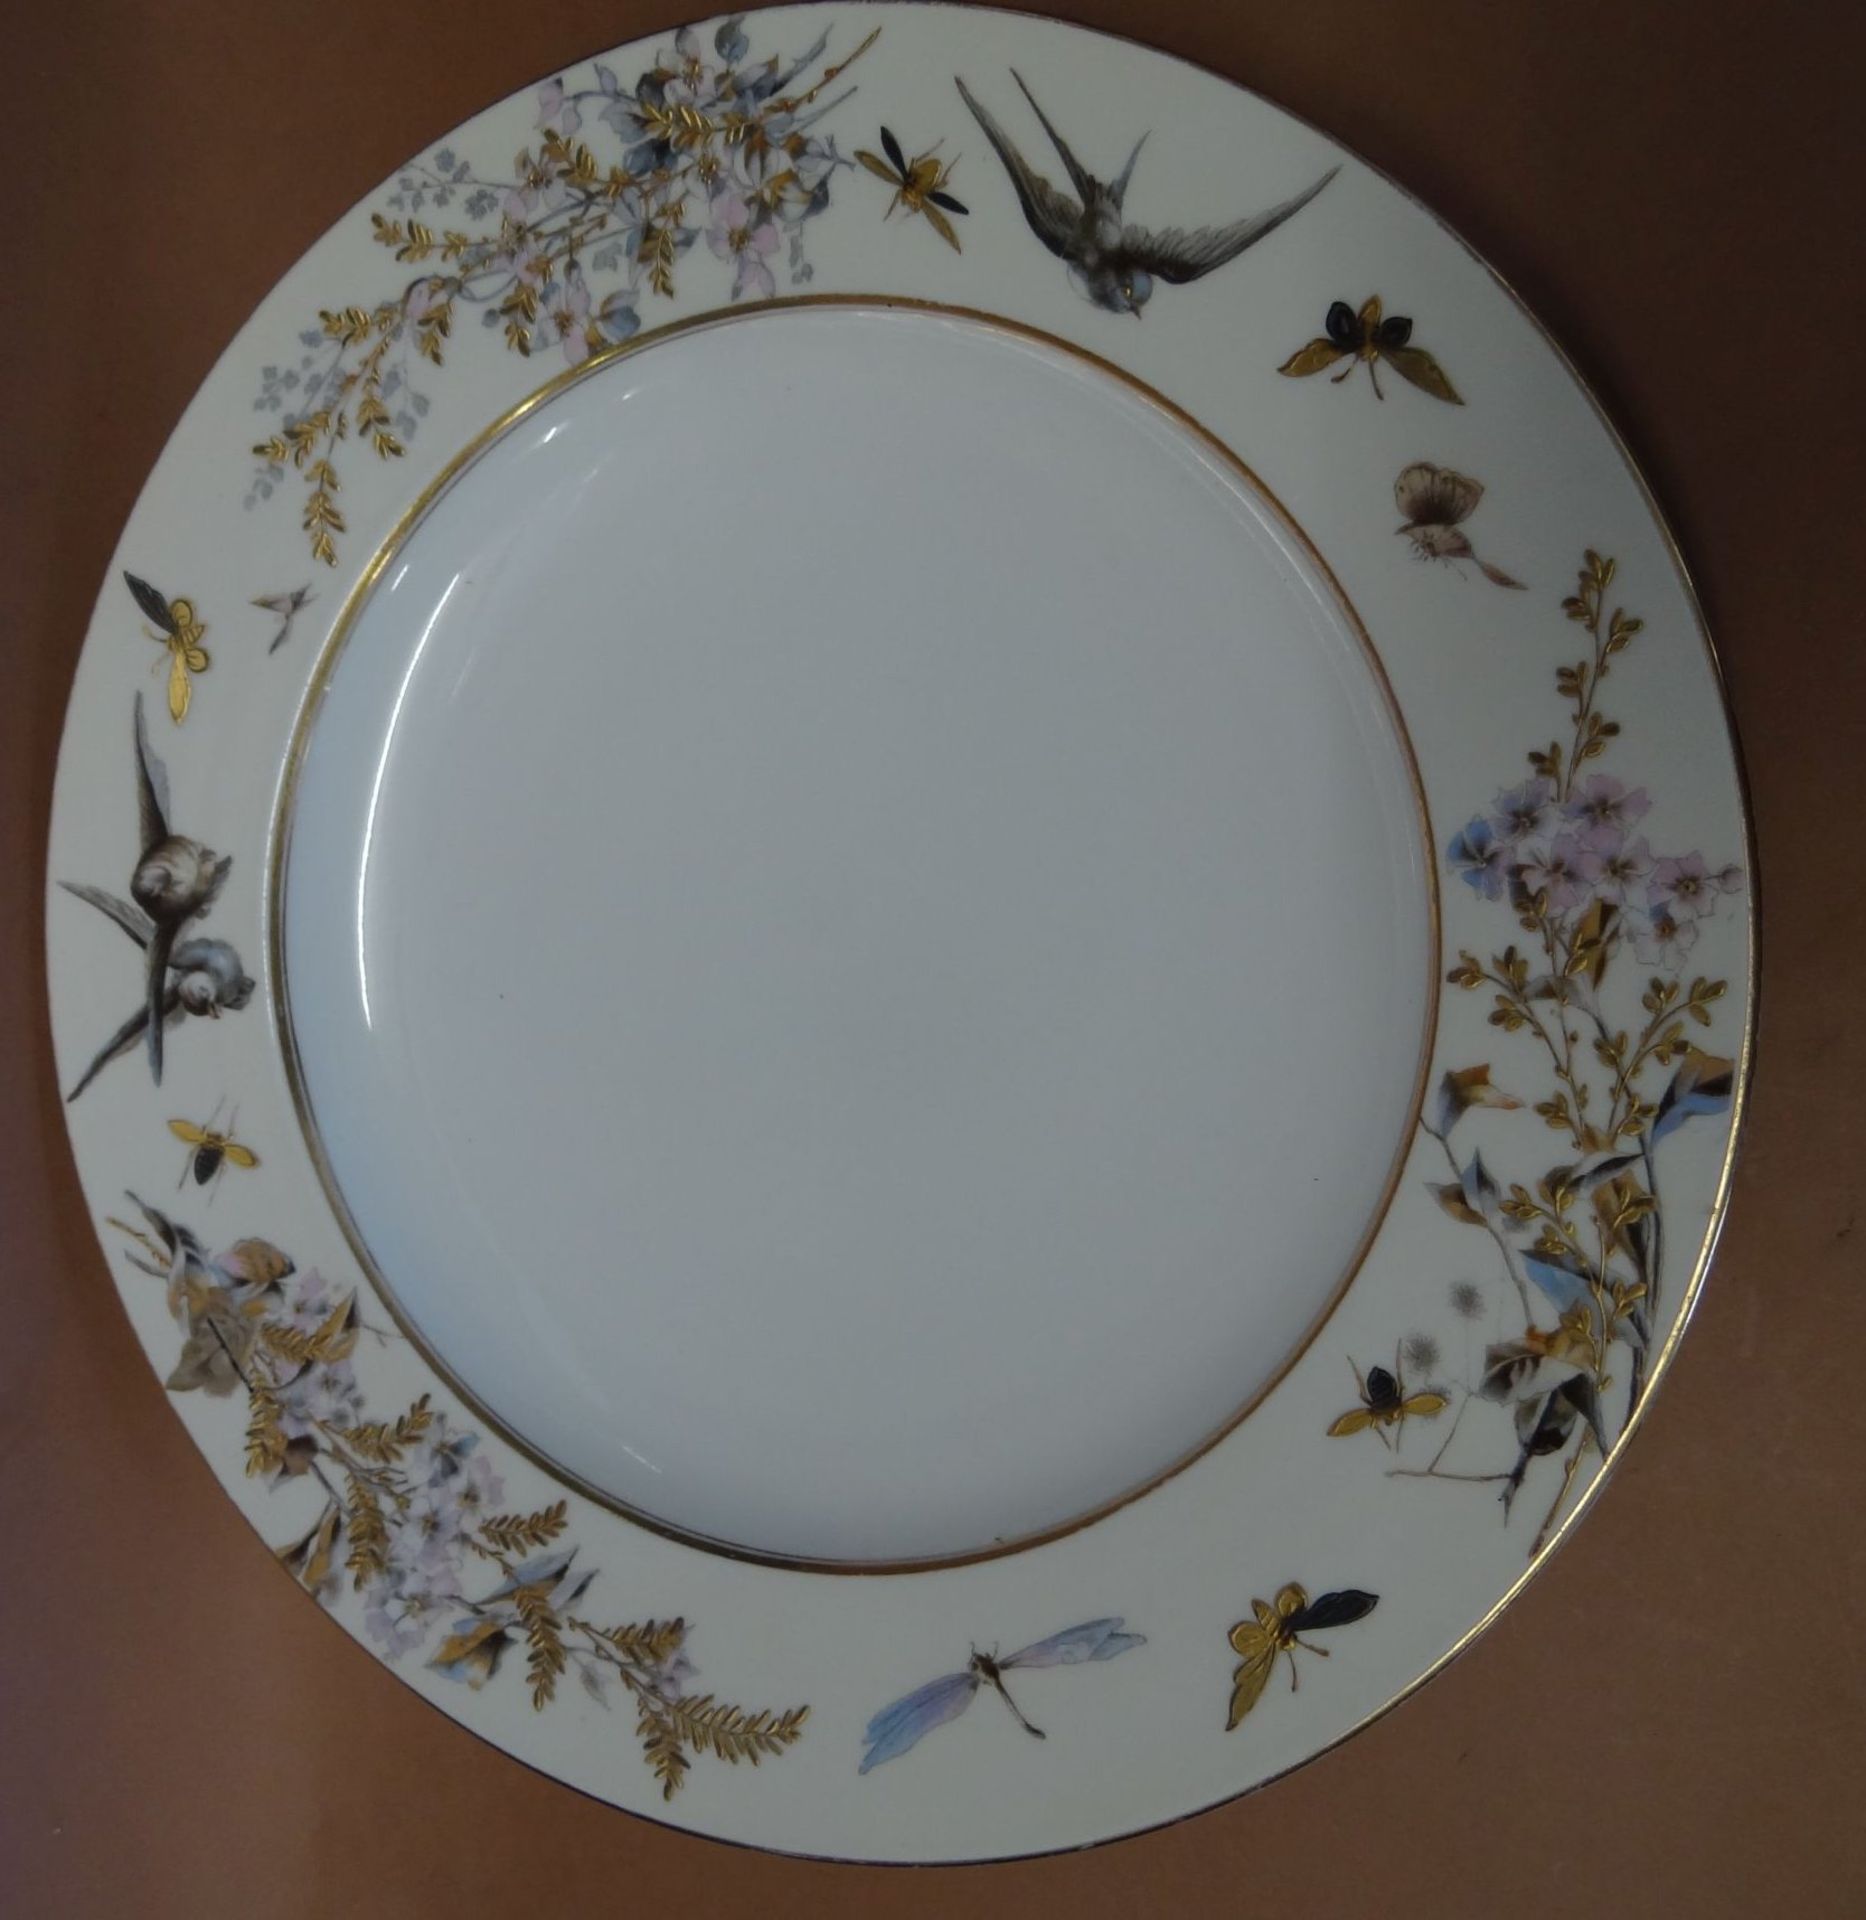 grosse eckige und runde Platte, bemalt mit Insekten Vögeln, Zweige, Goldstaffage, grüne Marke, - Bild 3 aus 10